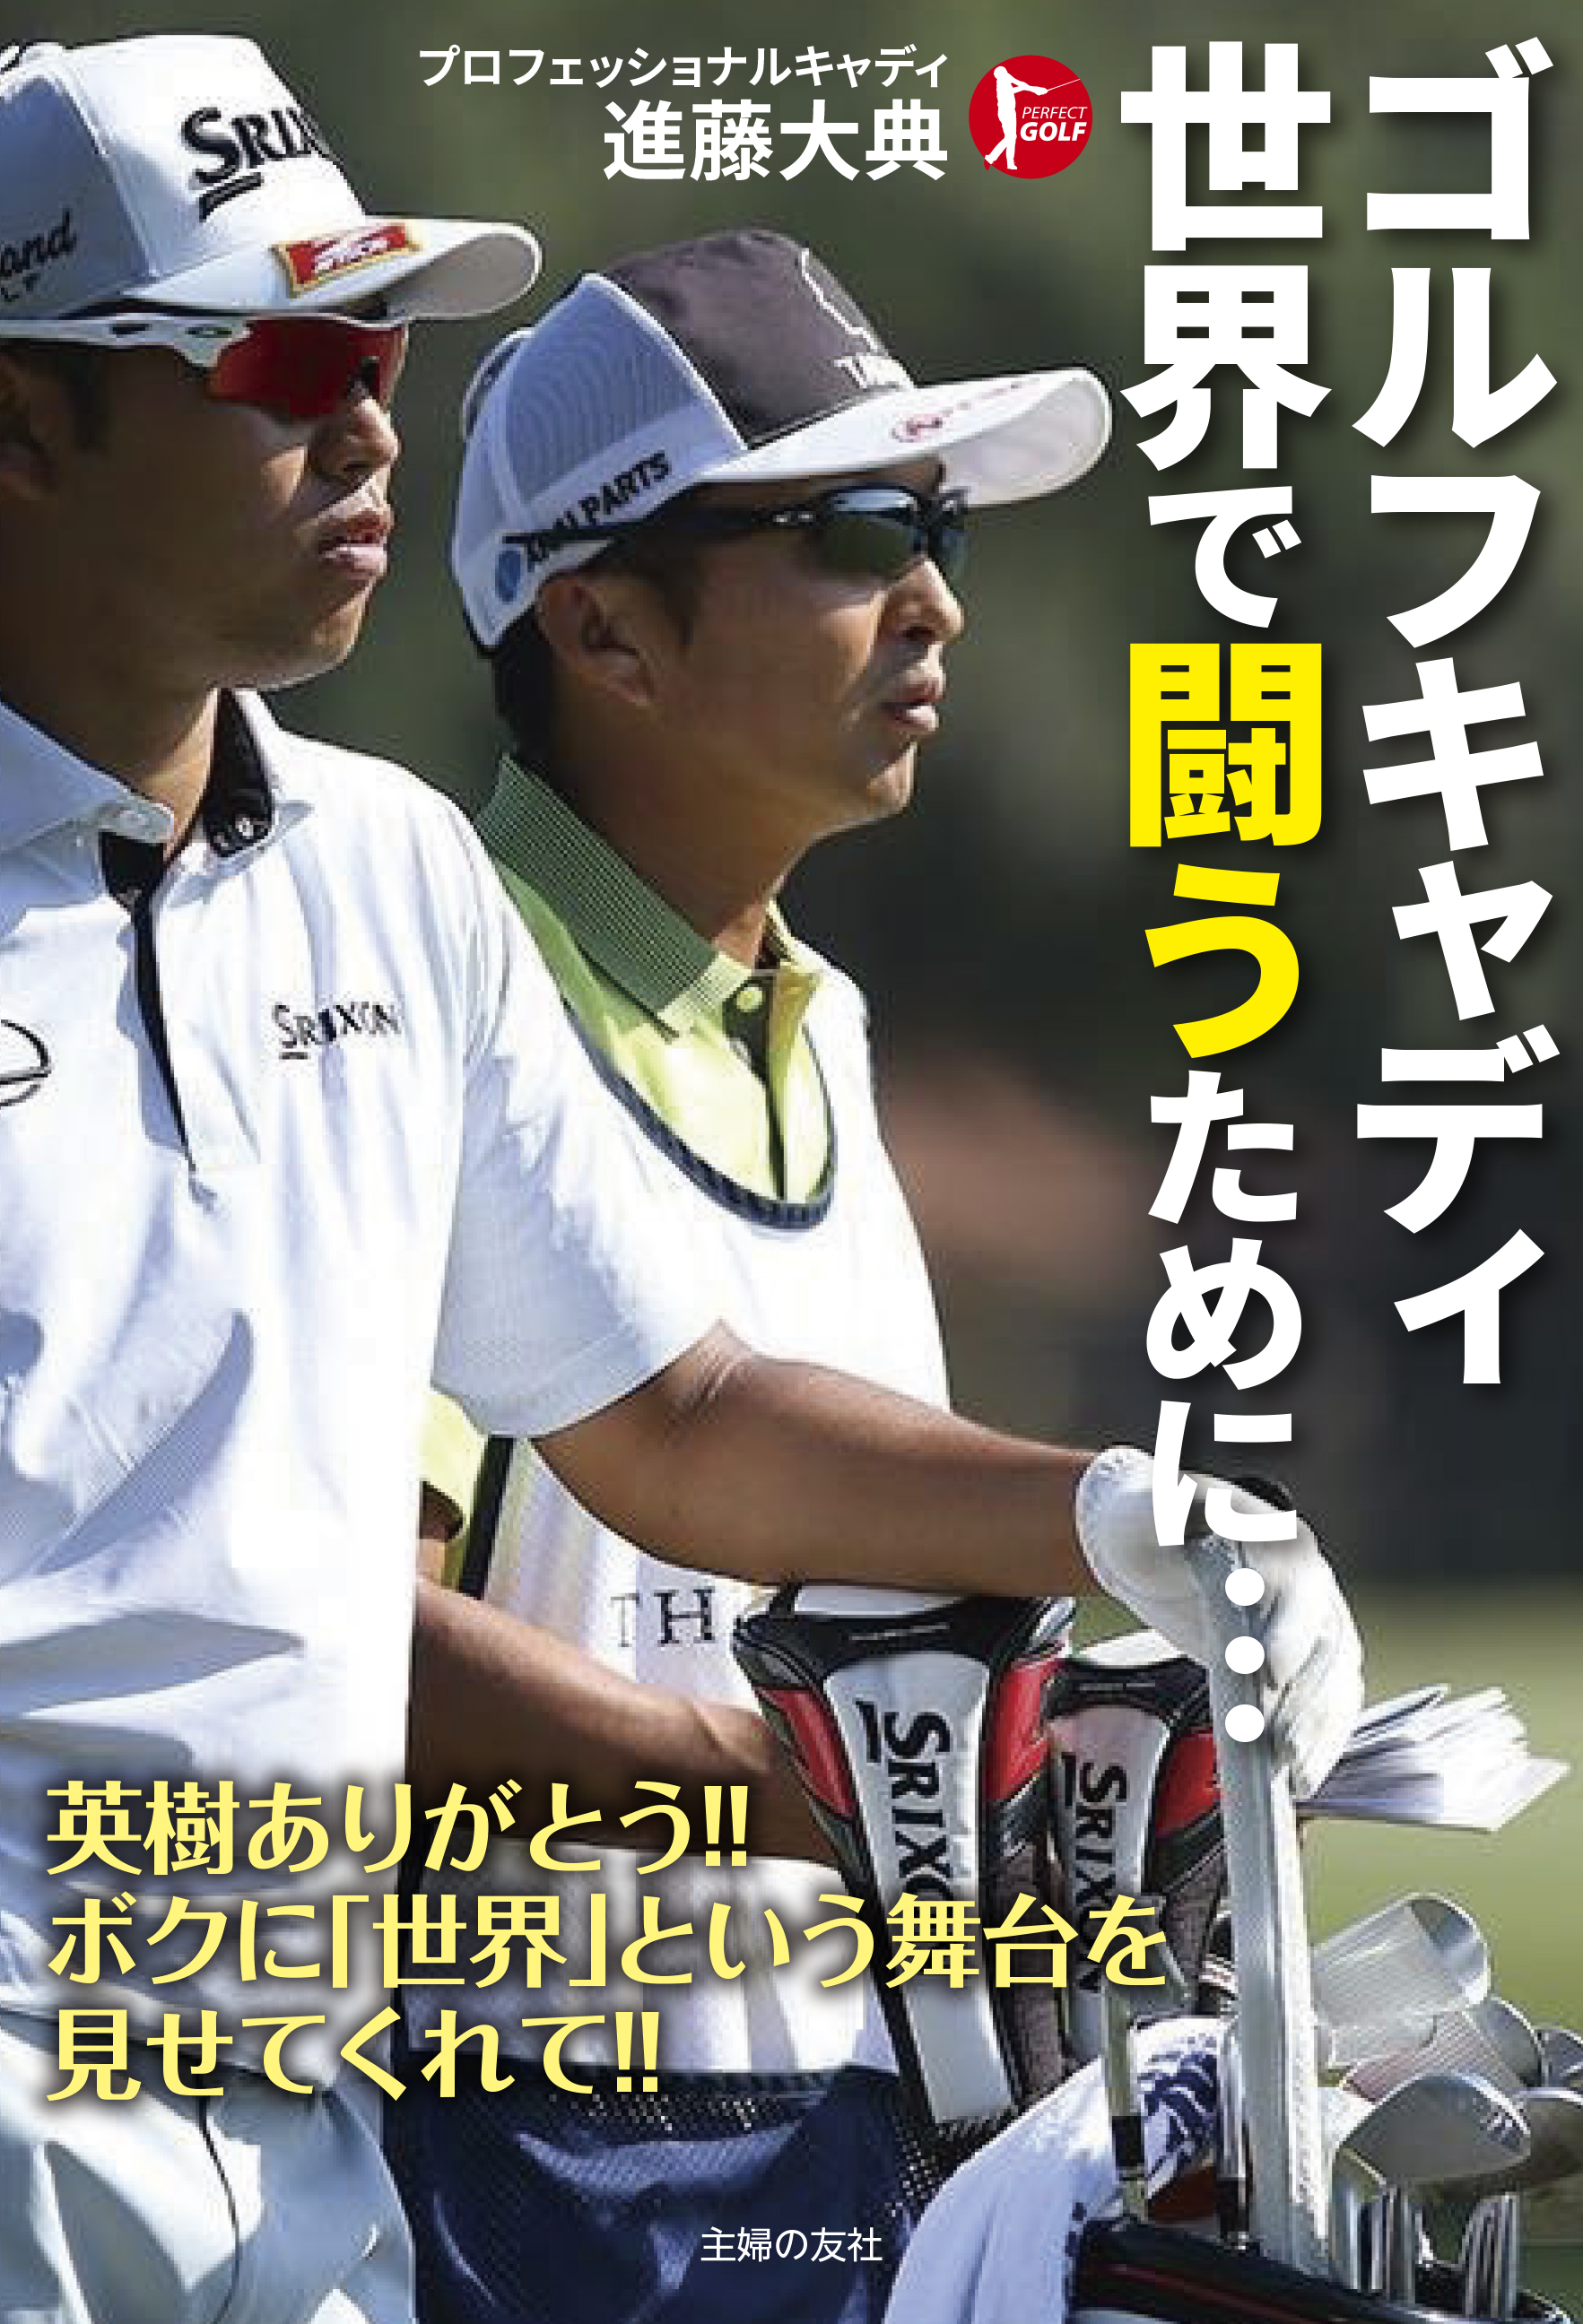 松山英樹 超一流 強さの秘密がここに 書籍 ゴルフキャディ 世界で闘うために 予約開始 株式会社主婦の友社 のプレスリリース